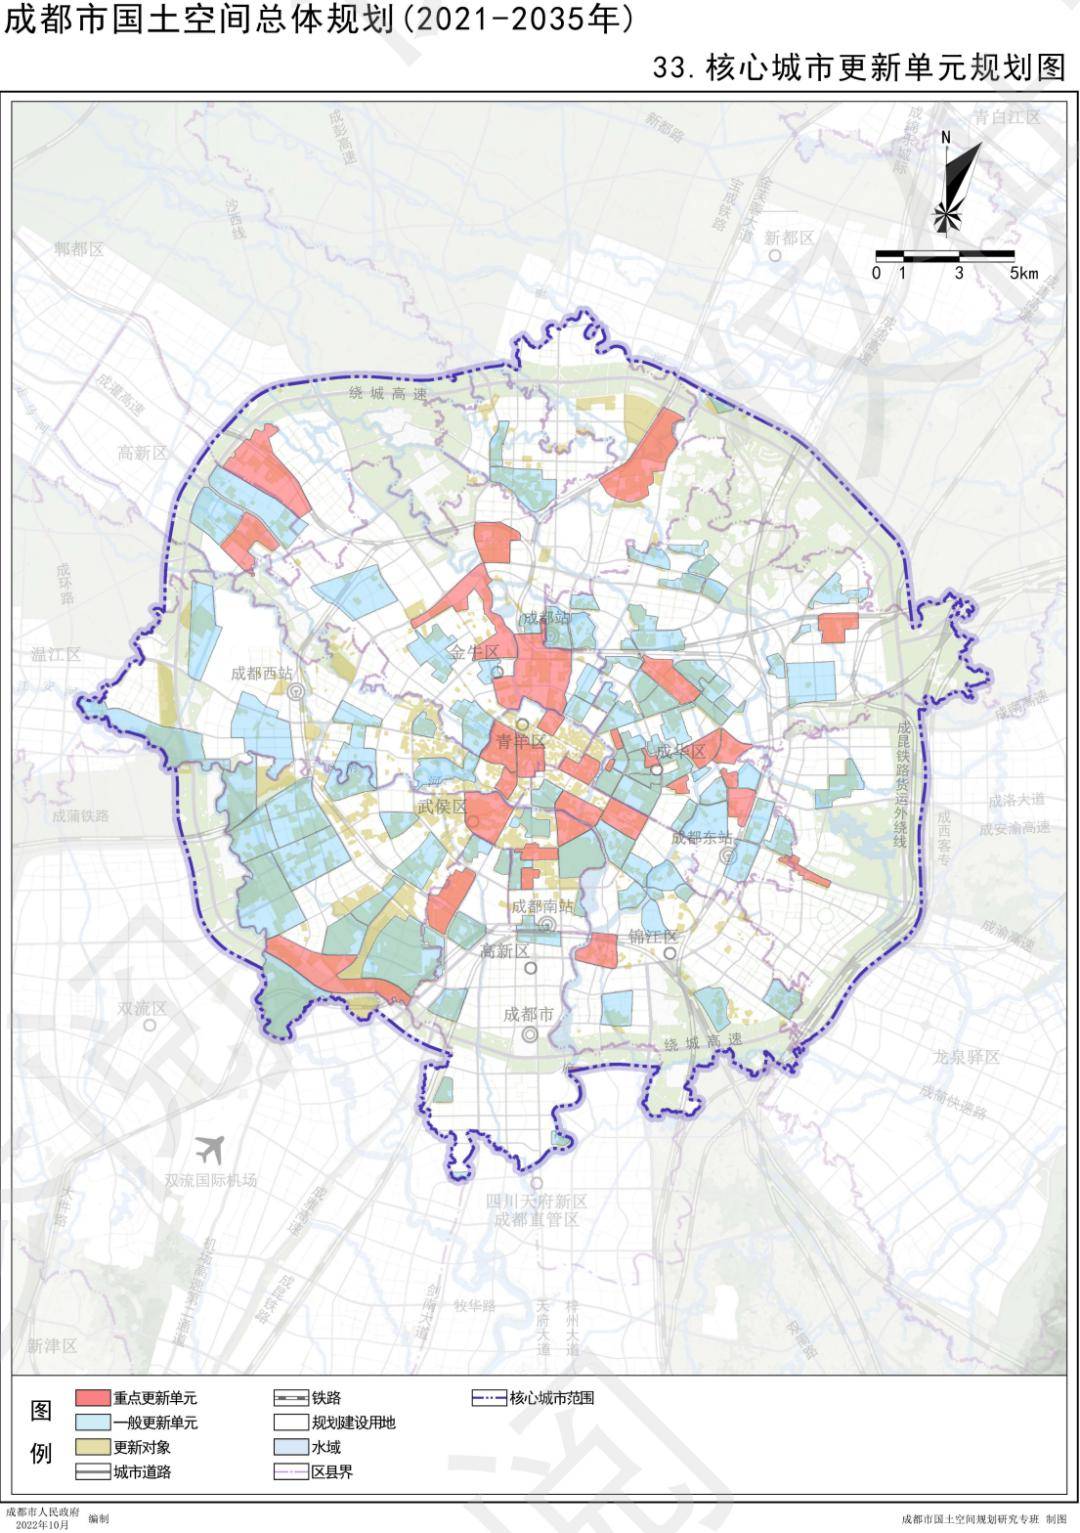 《成都市国土空间总体规划(2021